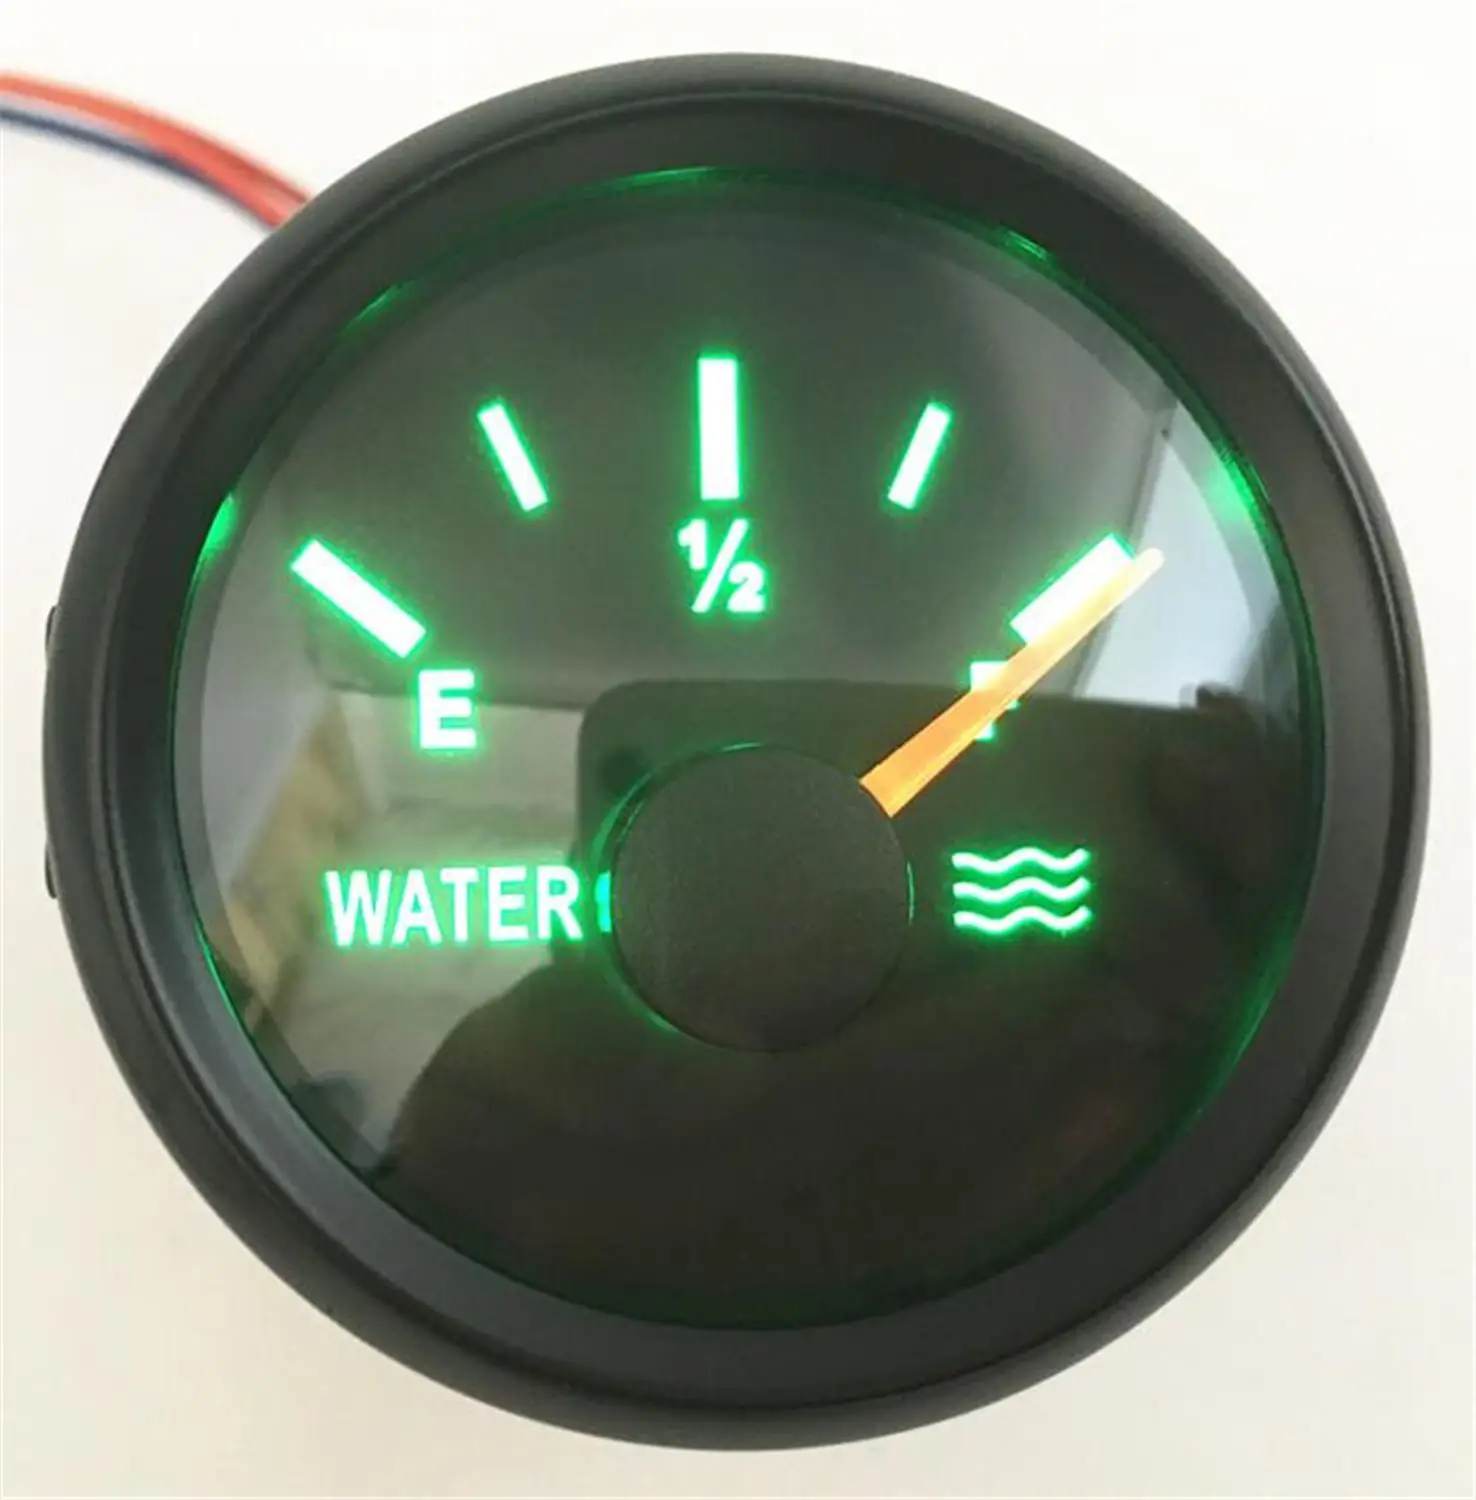 

1 шт. 0-190ohm черные датчики уровня воды 52 мм зеленая подсветка измеритель уровня воды 240-33ohm 9-32vdc для автомобиля лодки мотоцикла грузовика